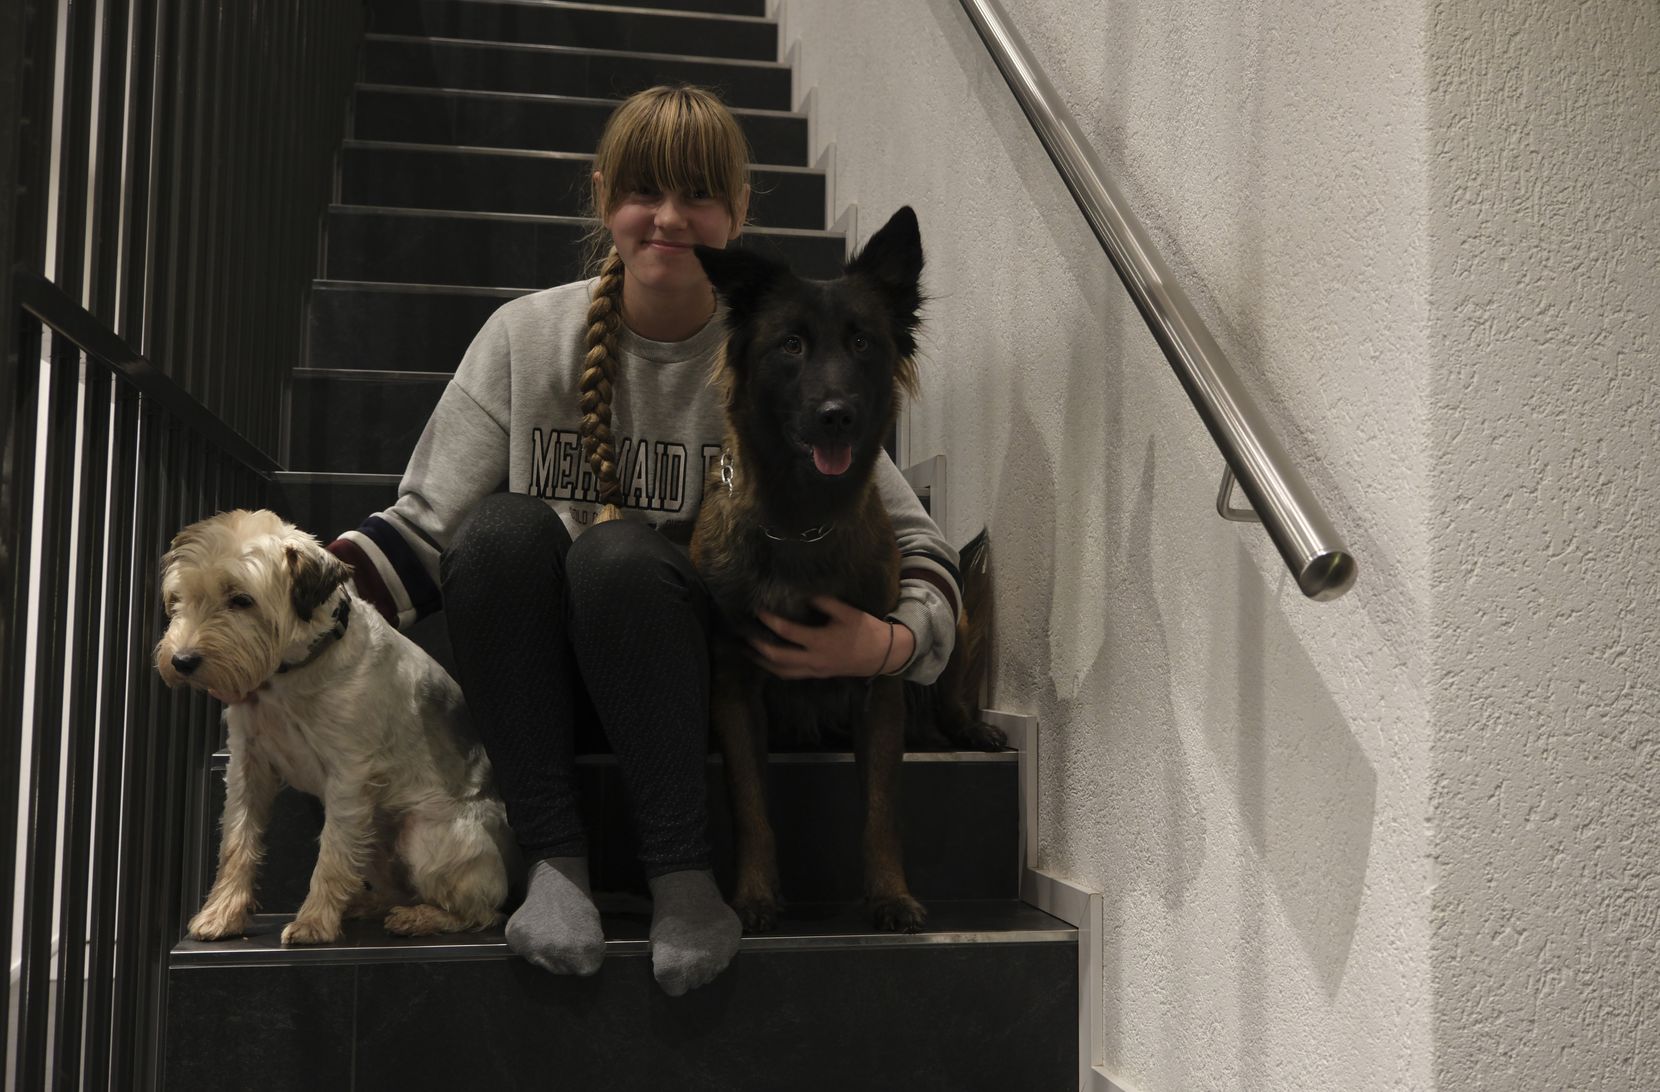 Auf dem Bild ist ein Mädchen mit zwei Hunden auf einer Treppe sitzend zu sehen.